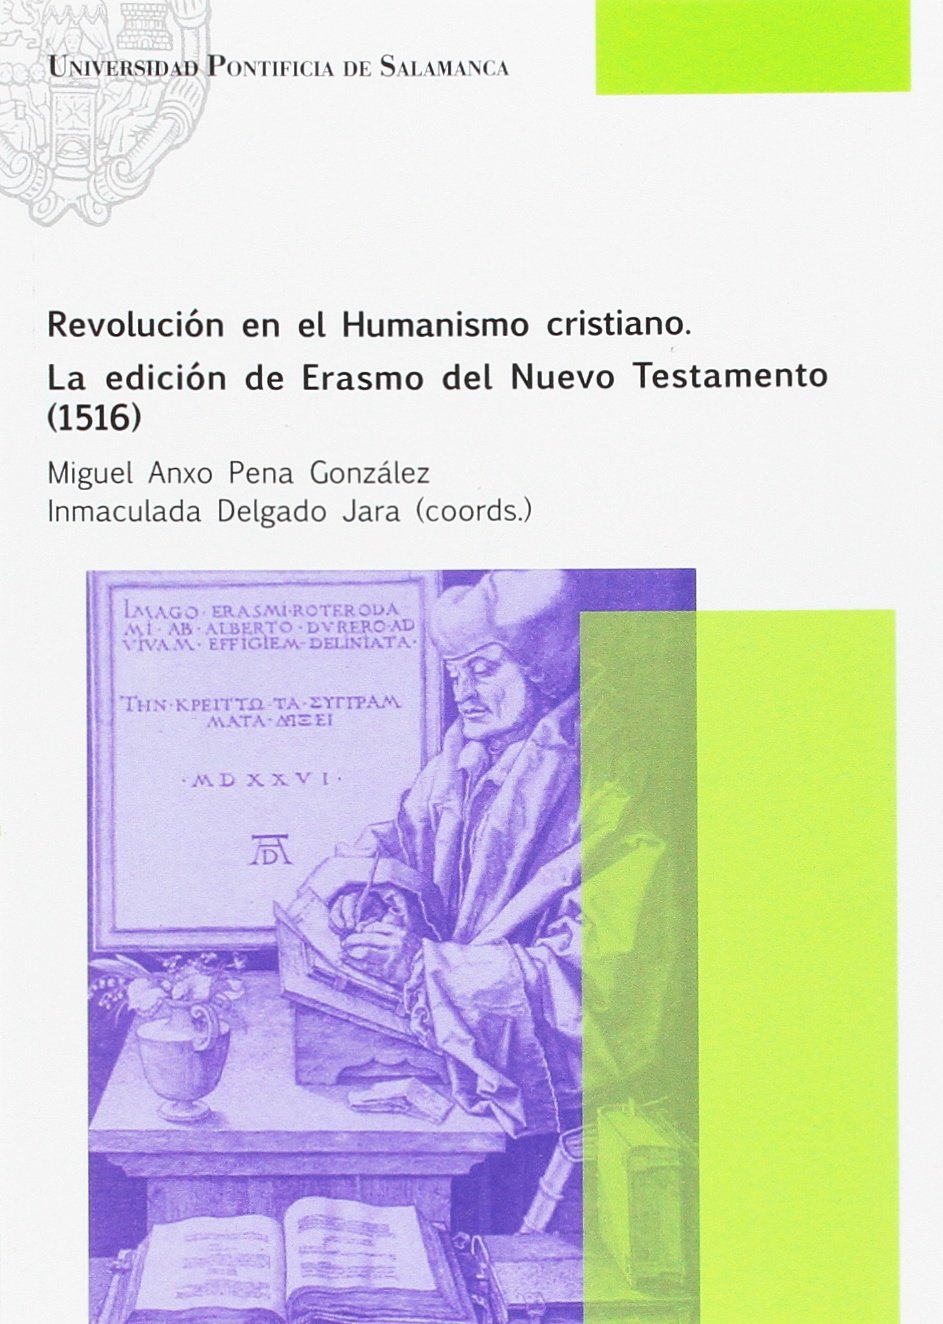 Imagen de portada del libro Revolución en el humanismo cristiano